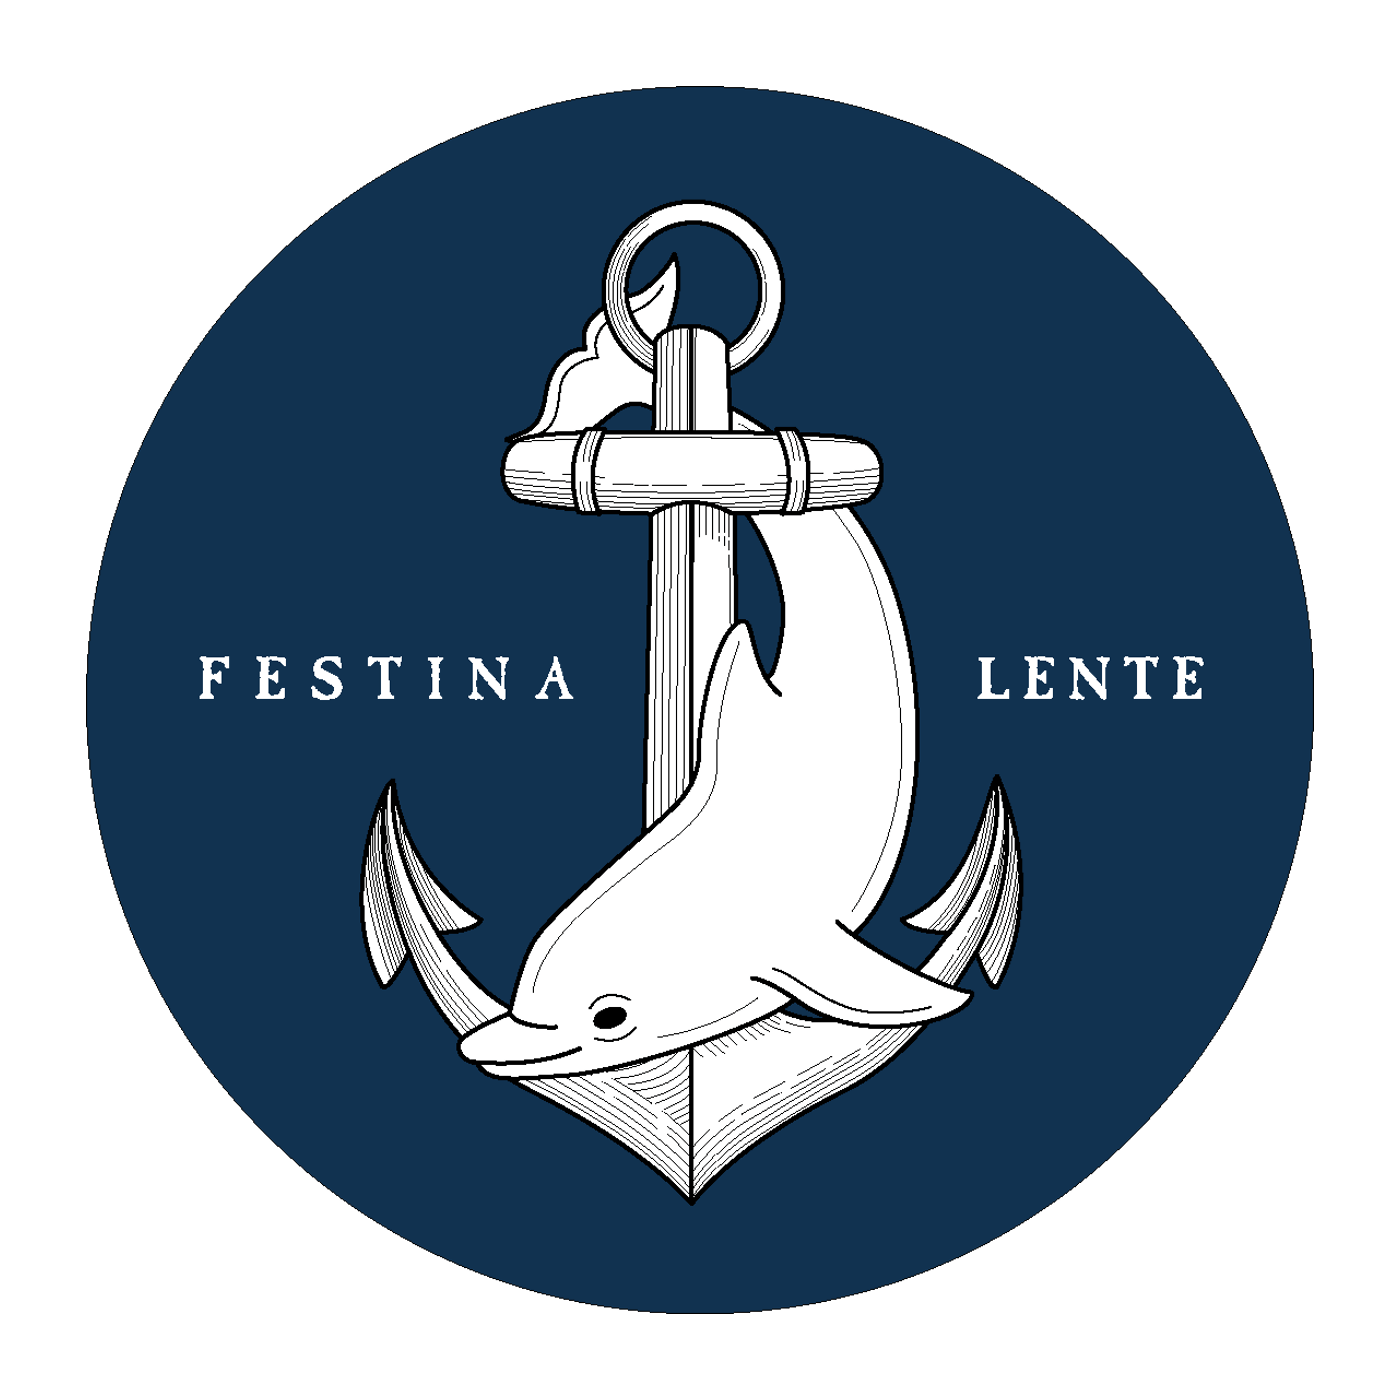 Festina Logo - Festina Lente Marketing. Listen via Stitcher Radio On Demand